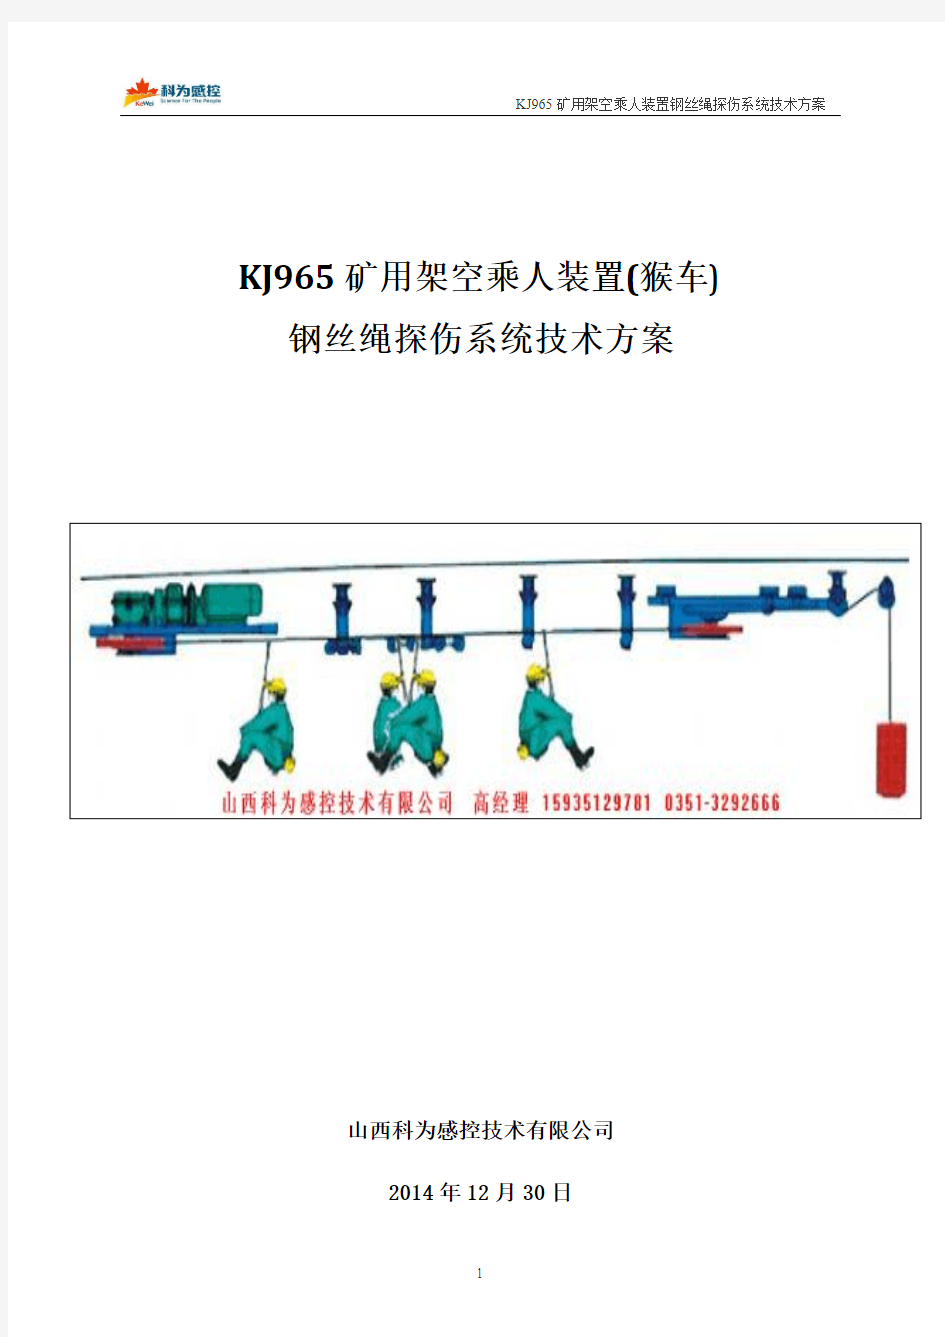 KJ965猴车钢丝绳探伤仪(在线检测系统)技术方案(山西科为)